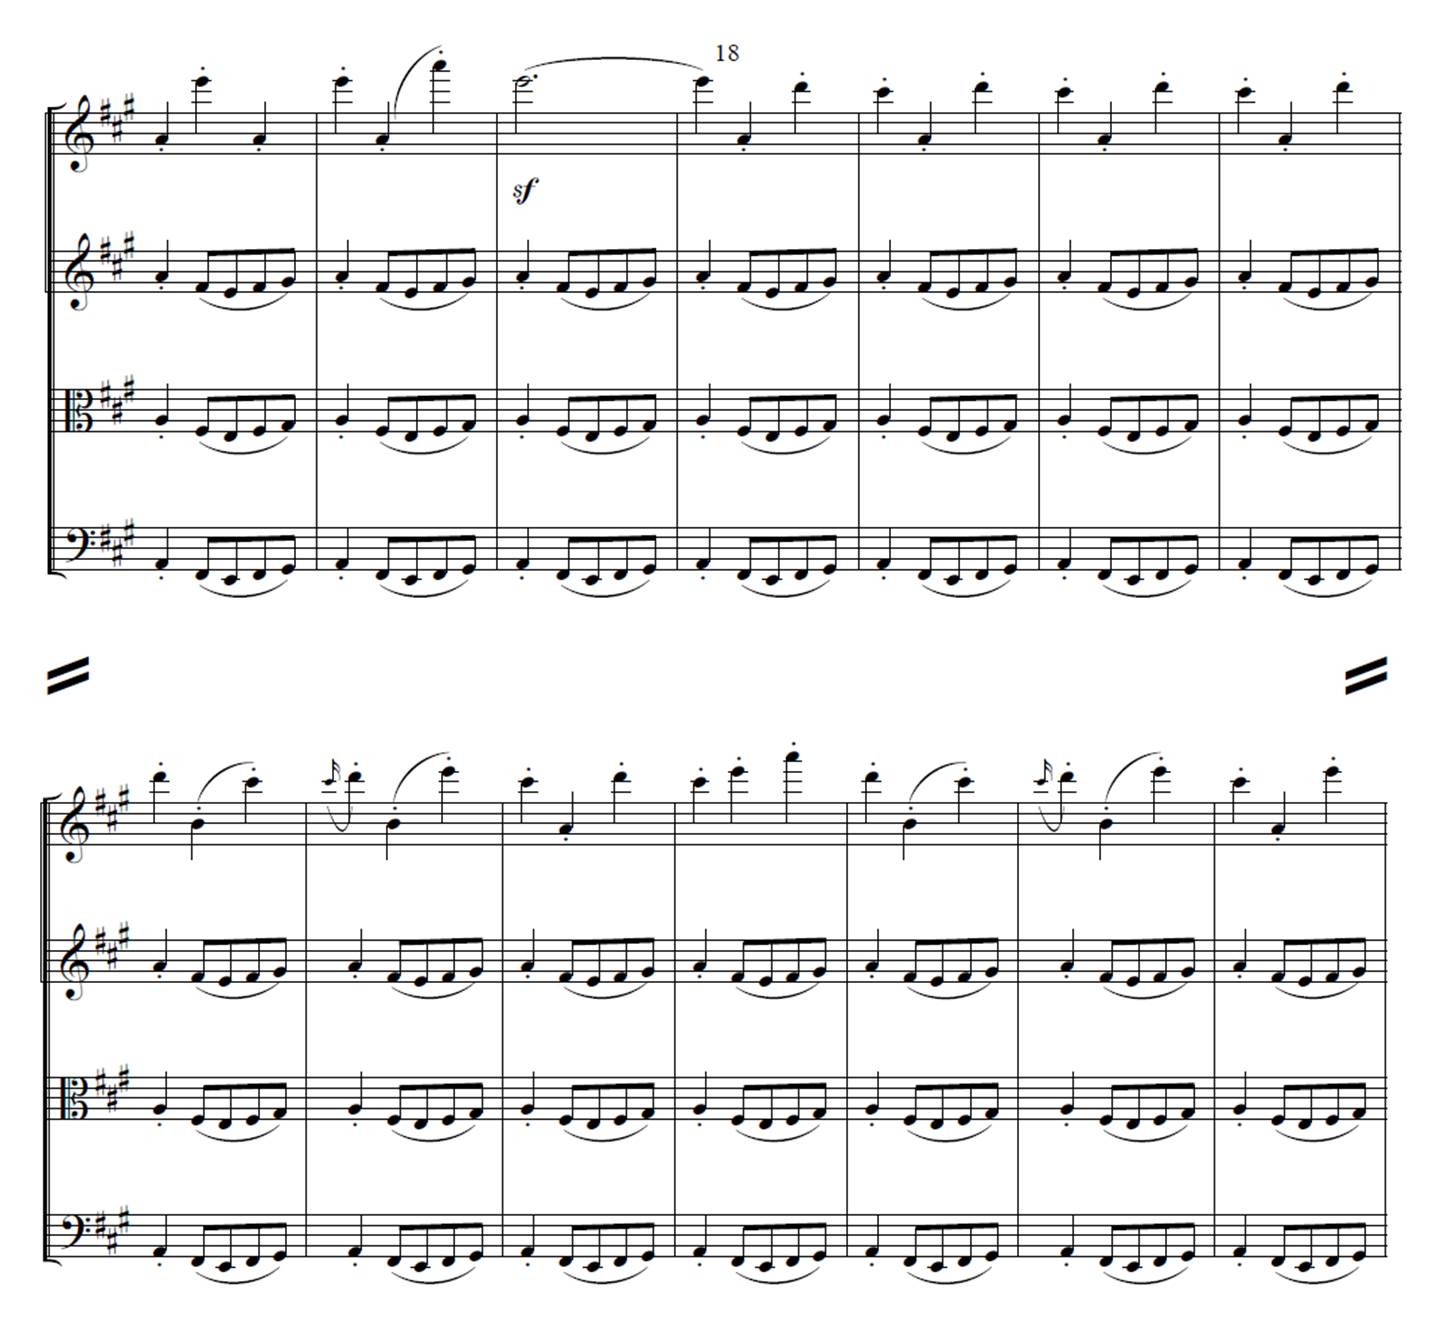 ベートーヴェン 弦楽四重奏曲第16番 白鳥の歌 クラシック音楽とアート